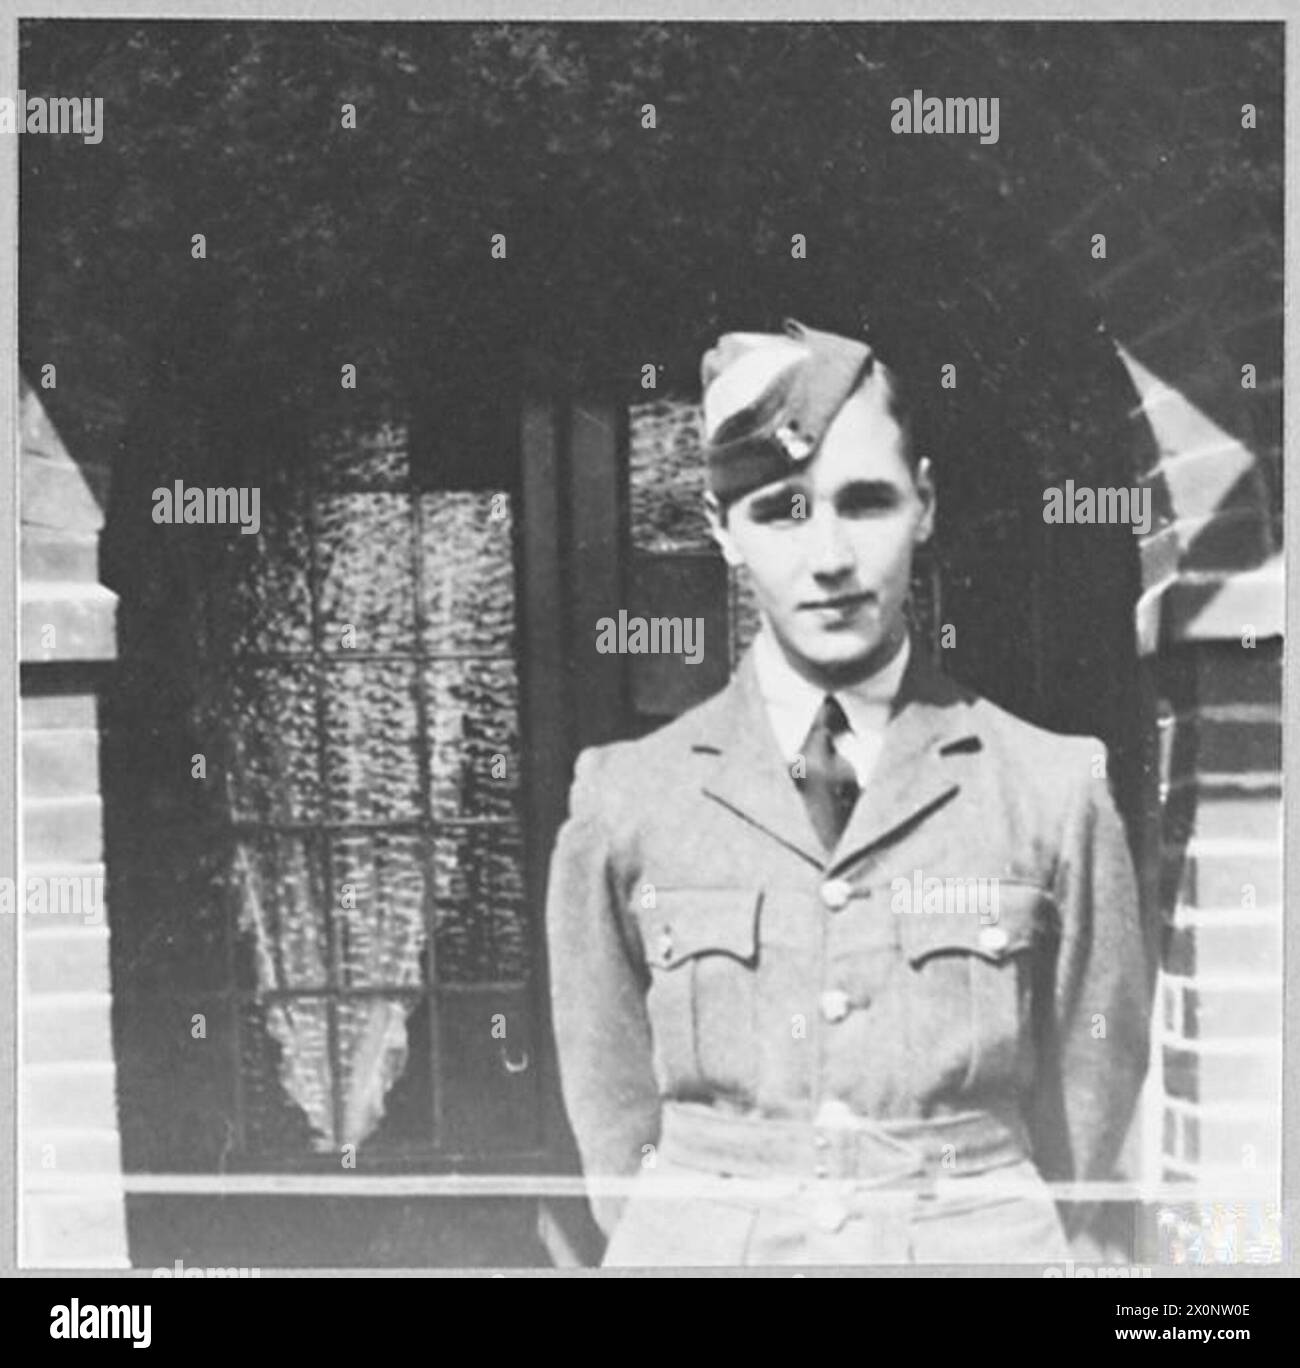 DA A.T.C. CADETTO A ISTRUTTORE DI VOLO - Robert Sidney Salmon di 146 City Way, Rochester, era un impiegato impiegato impiegato presso la sig.ra Short Brothers Ltd., costruzione di aeromobili, prima di entrare nella R.A.F. divenne un cadetto A.T.C. nel No.213 (città di Rochester) ATC Squadron nel febbraio 1941, ha ottenuto il certificato di idoneità parte i e ha raggiunto il grado di sergente di volo. Entrò a far parte della R.A.F. nel luglio 1942 e a R.A.T.C. Salisbury, Rhodesia, fu premiato con la coppa d'argento per il miglior cadetto a tutti gli effetti alla parata di passaggio del Comandante ufficiale. Nato il 25 marzo 1924 Salmon fu educato a Sir Joseph Willia Foto Stock